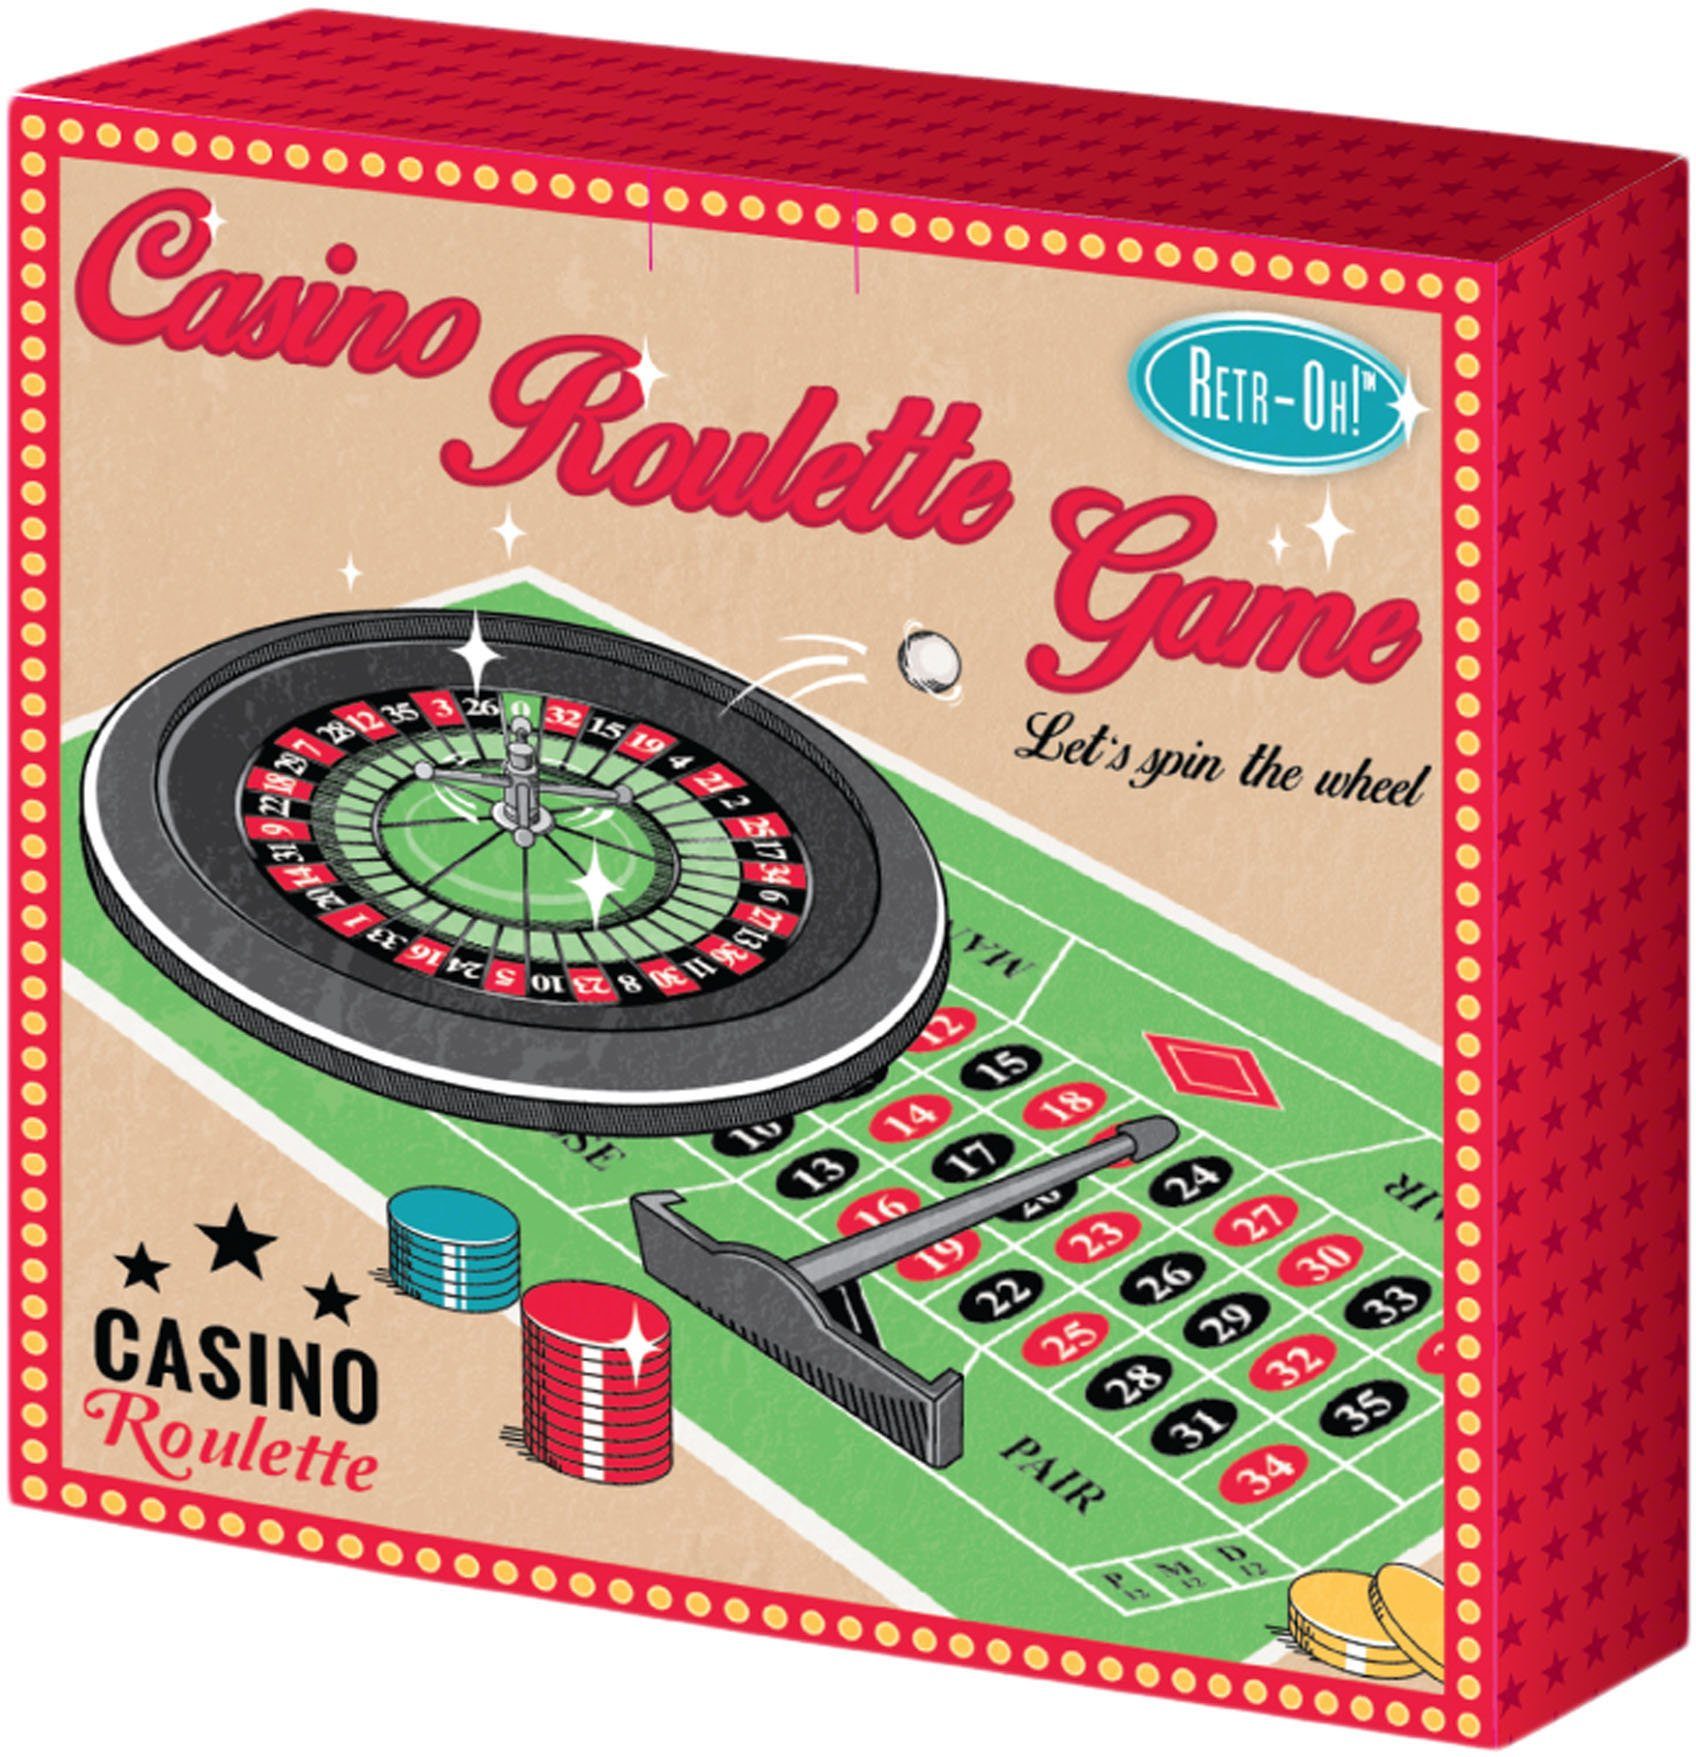 KINDER ROULETTE Spiel Casino Neu OVP Vintage Komplett mit Spielmatte 